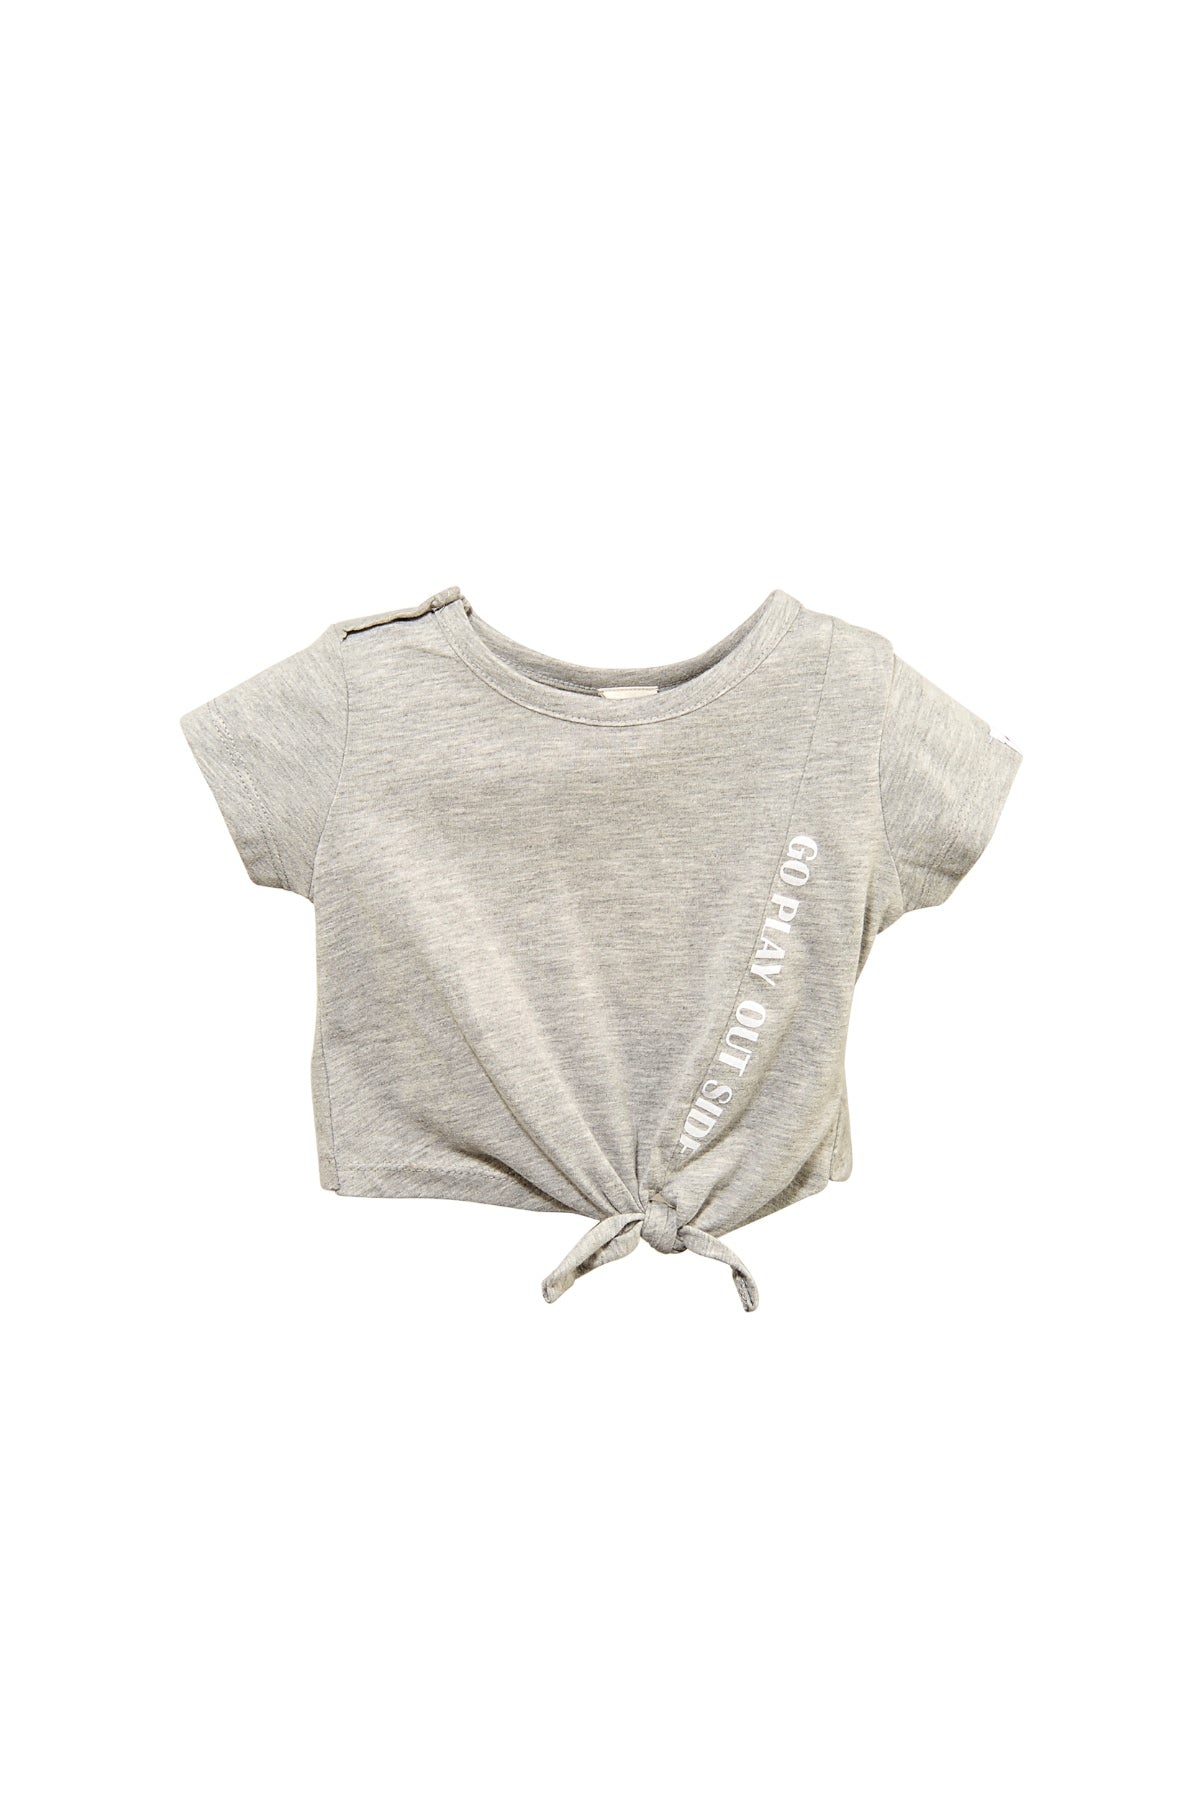 Kız Bebek Gri Bağlamalı Crop T-Shirt (9ay-4yaş)-3